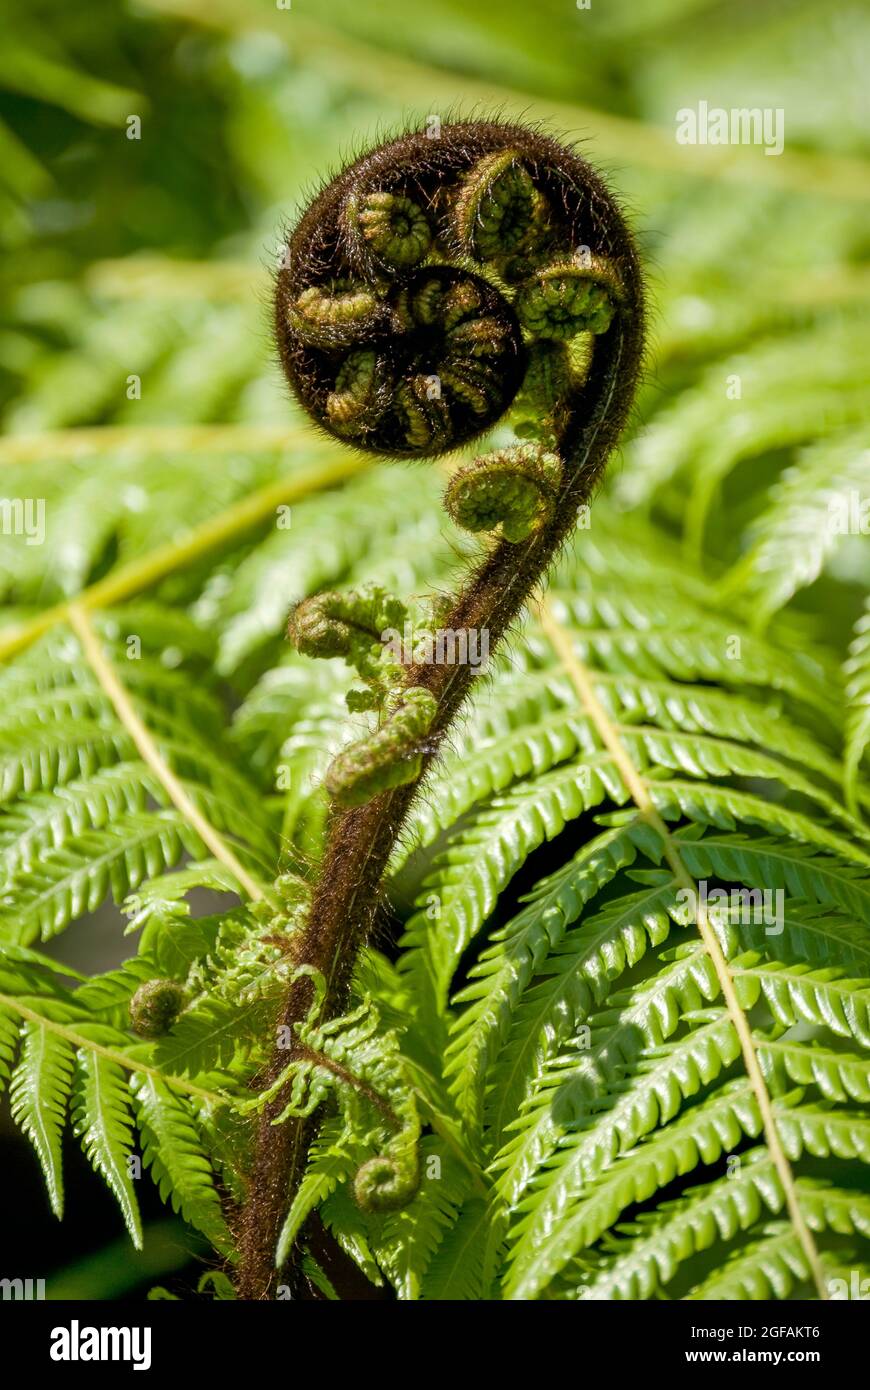 Develando fronda (Koru) del helecho plateado (Alsophila dealbata), Marlborough Sounds, Región de Marlborough, Nueva Zelanda Foto de stock